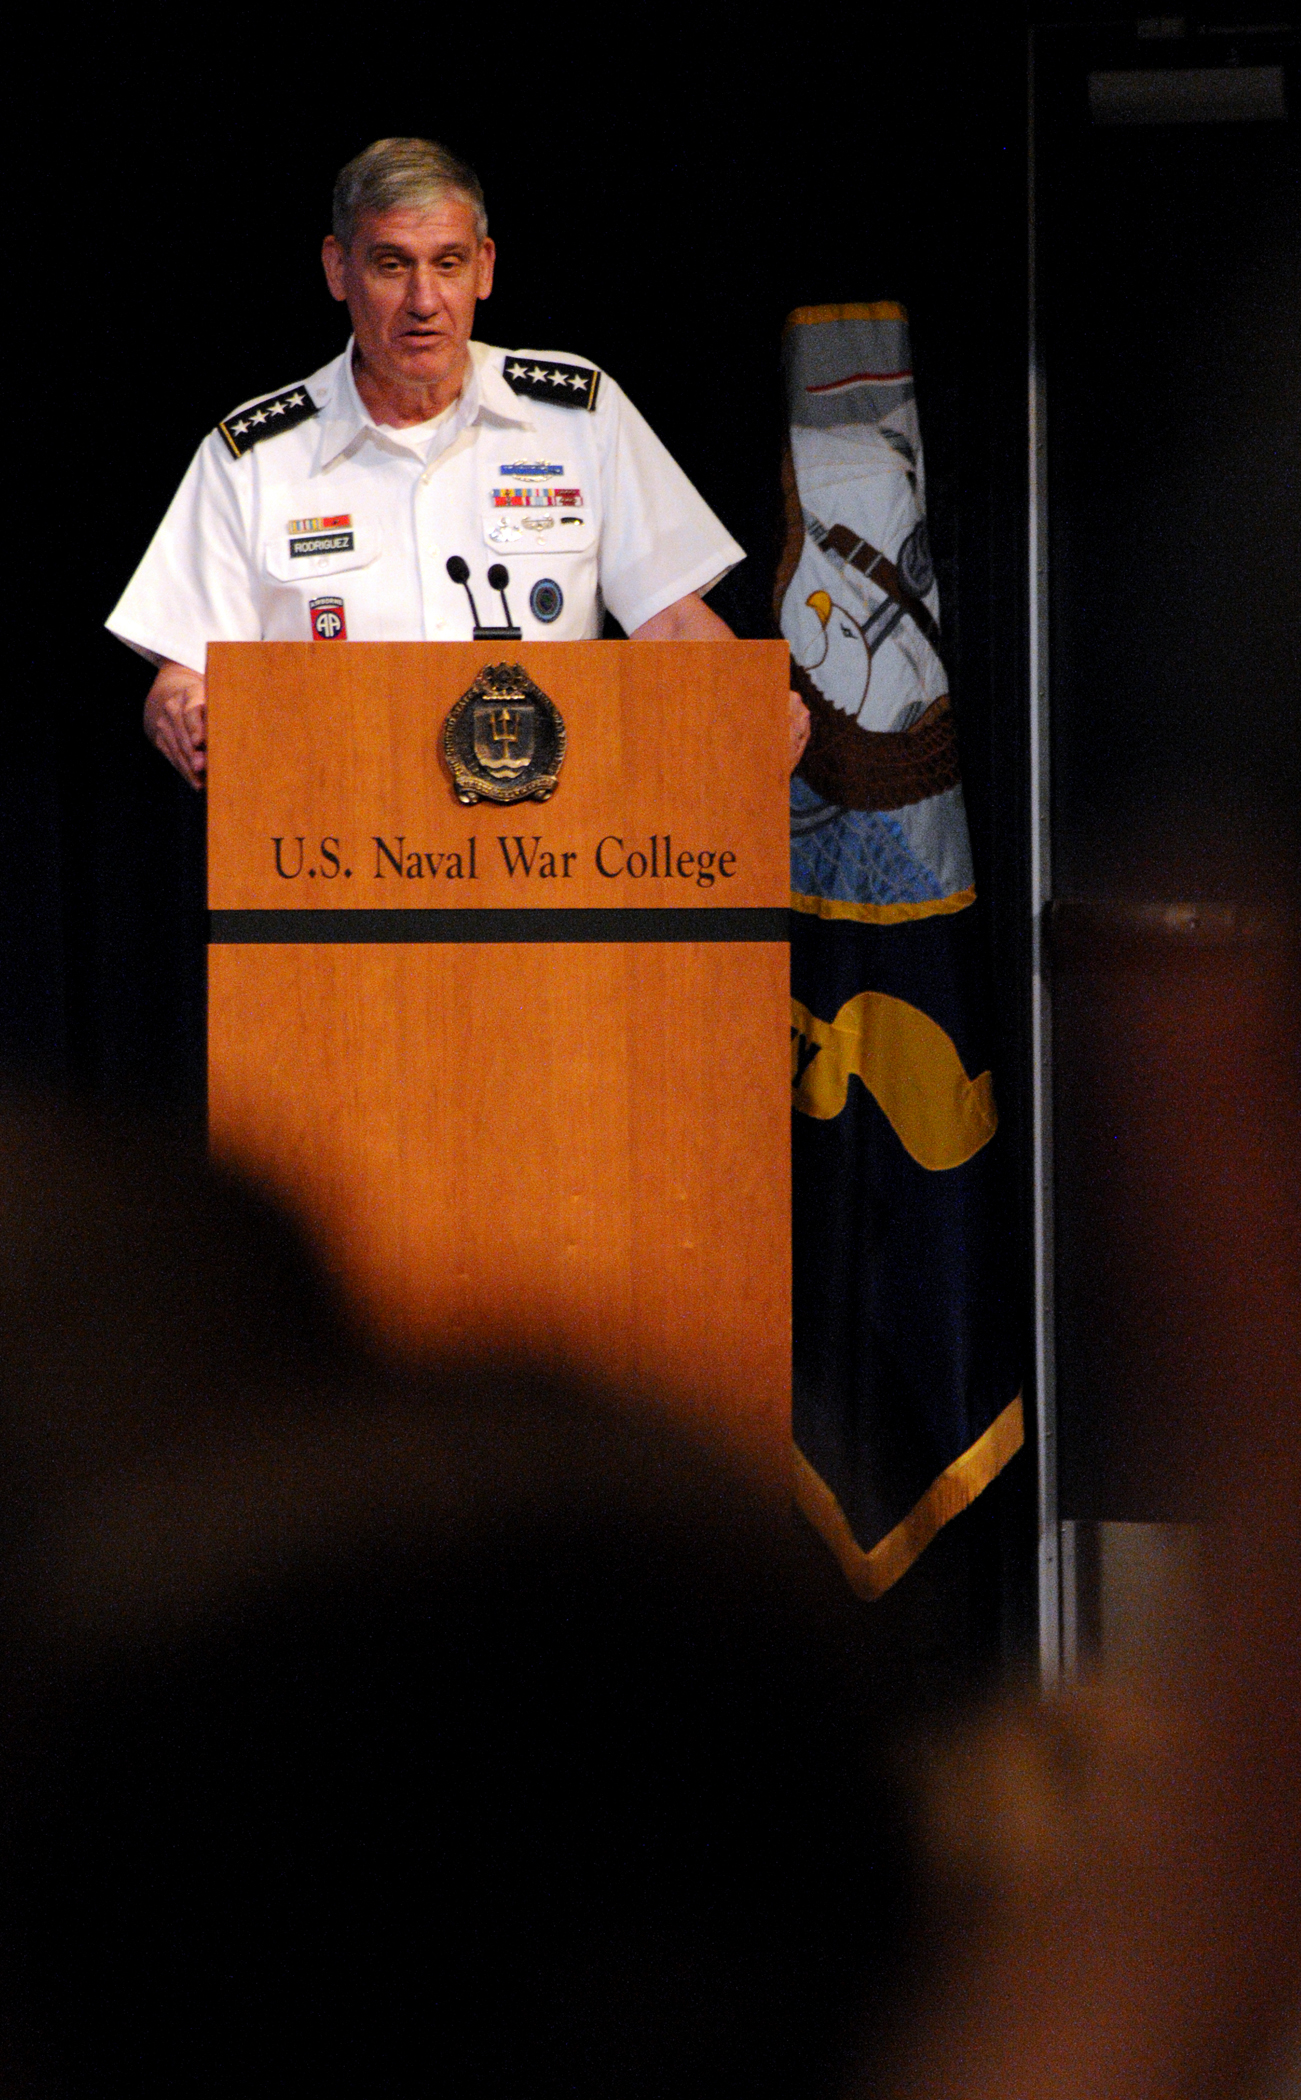 a naval war college official giving a speech